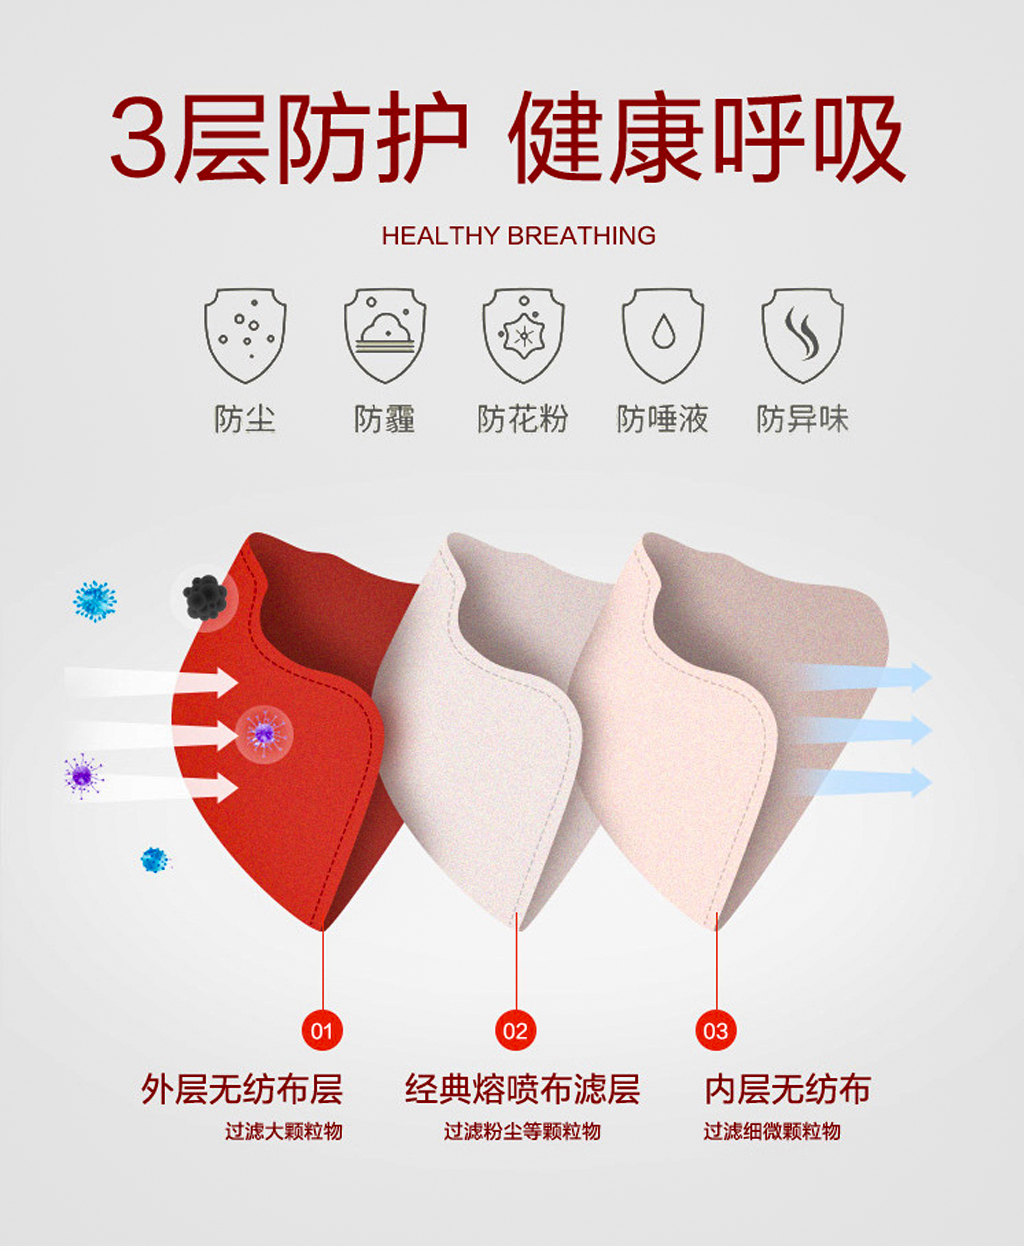 中國紅紀念款定制口罩,三層防護,外層無紡布可過濾大顆粒物,中層熔噴布可過濾粉塵等細小顆粒物